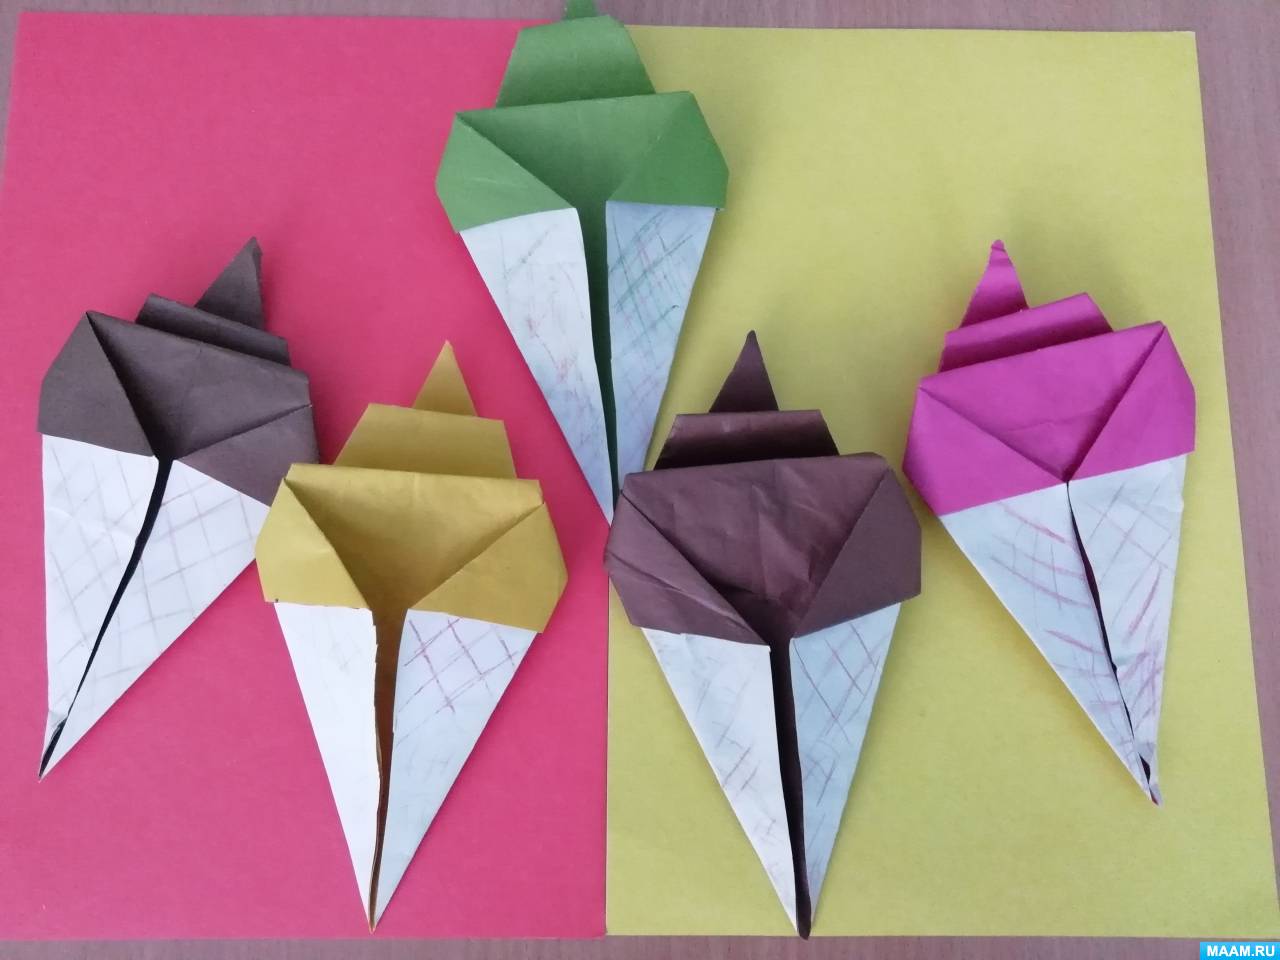 Серова, Серов: Объемные игрушки из бумаги. Модульное оригами